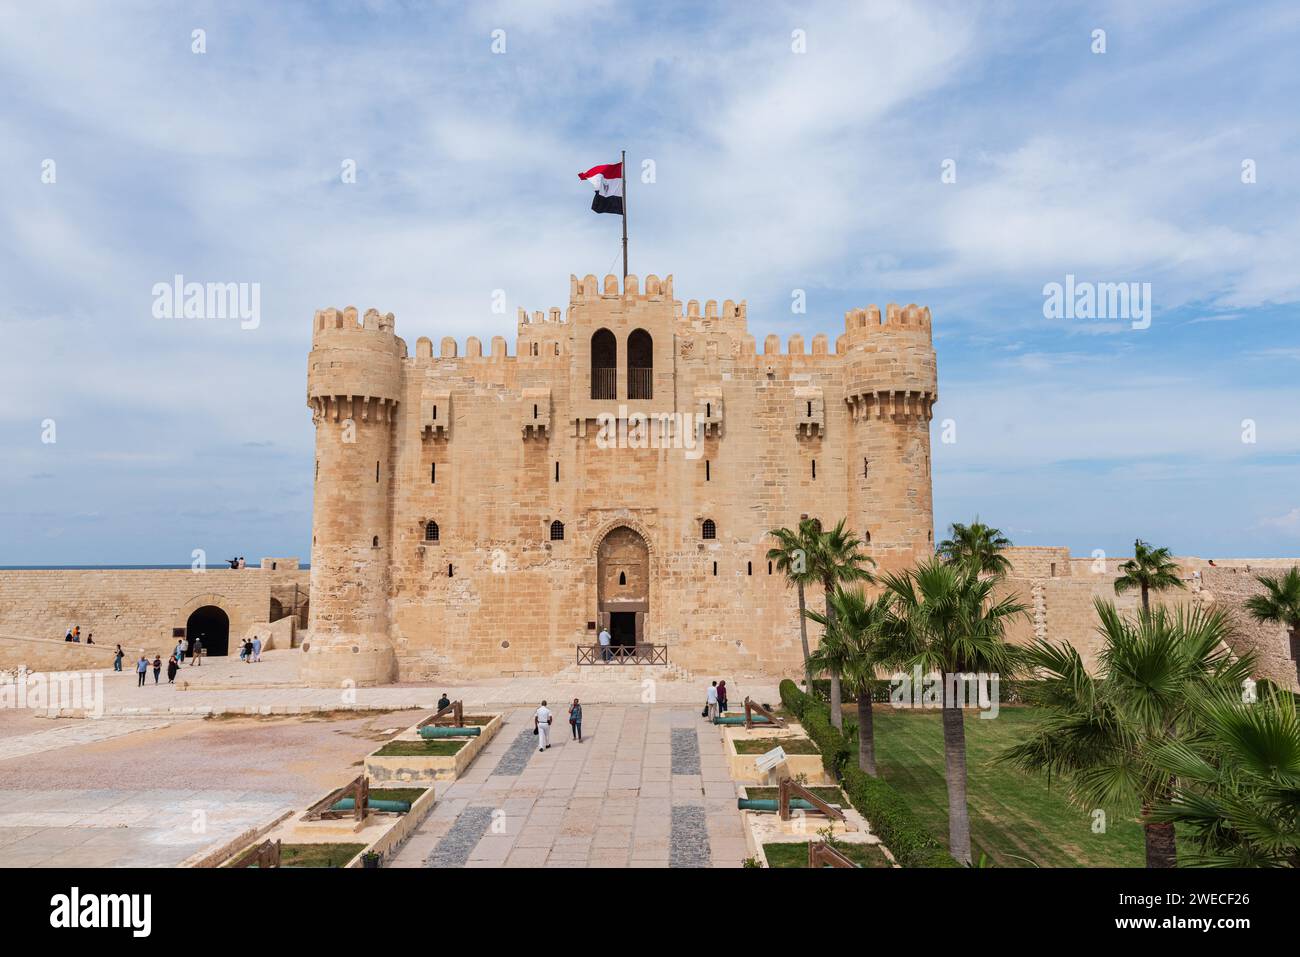 Citadelle de Qaitbay à Alexandrie, Égypte : une forteresse maritime historique, faisant écho à l'héritage architectural et à la défense côtière des temps anciens. Banque D'Images